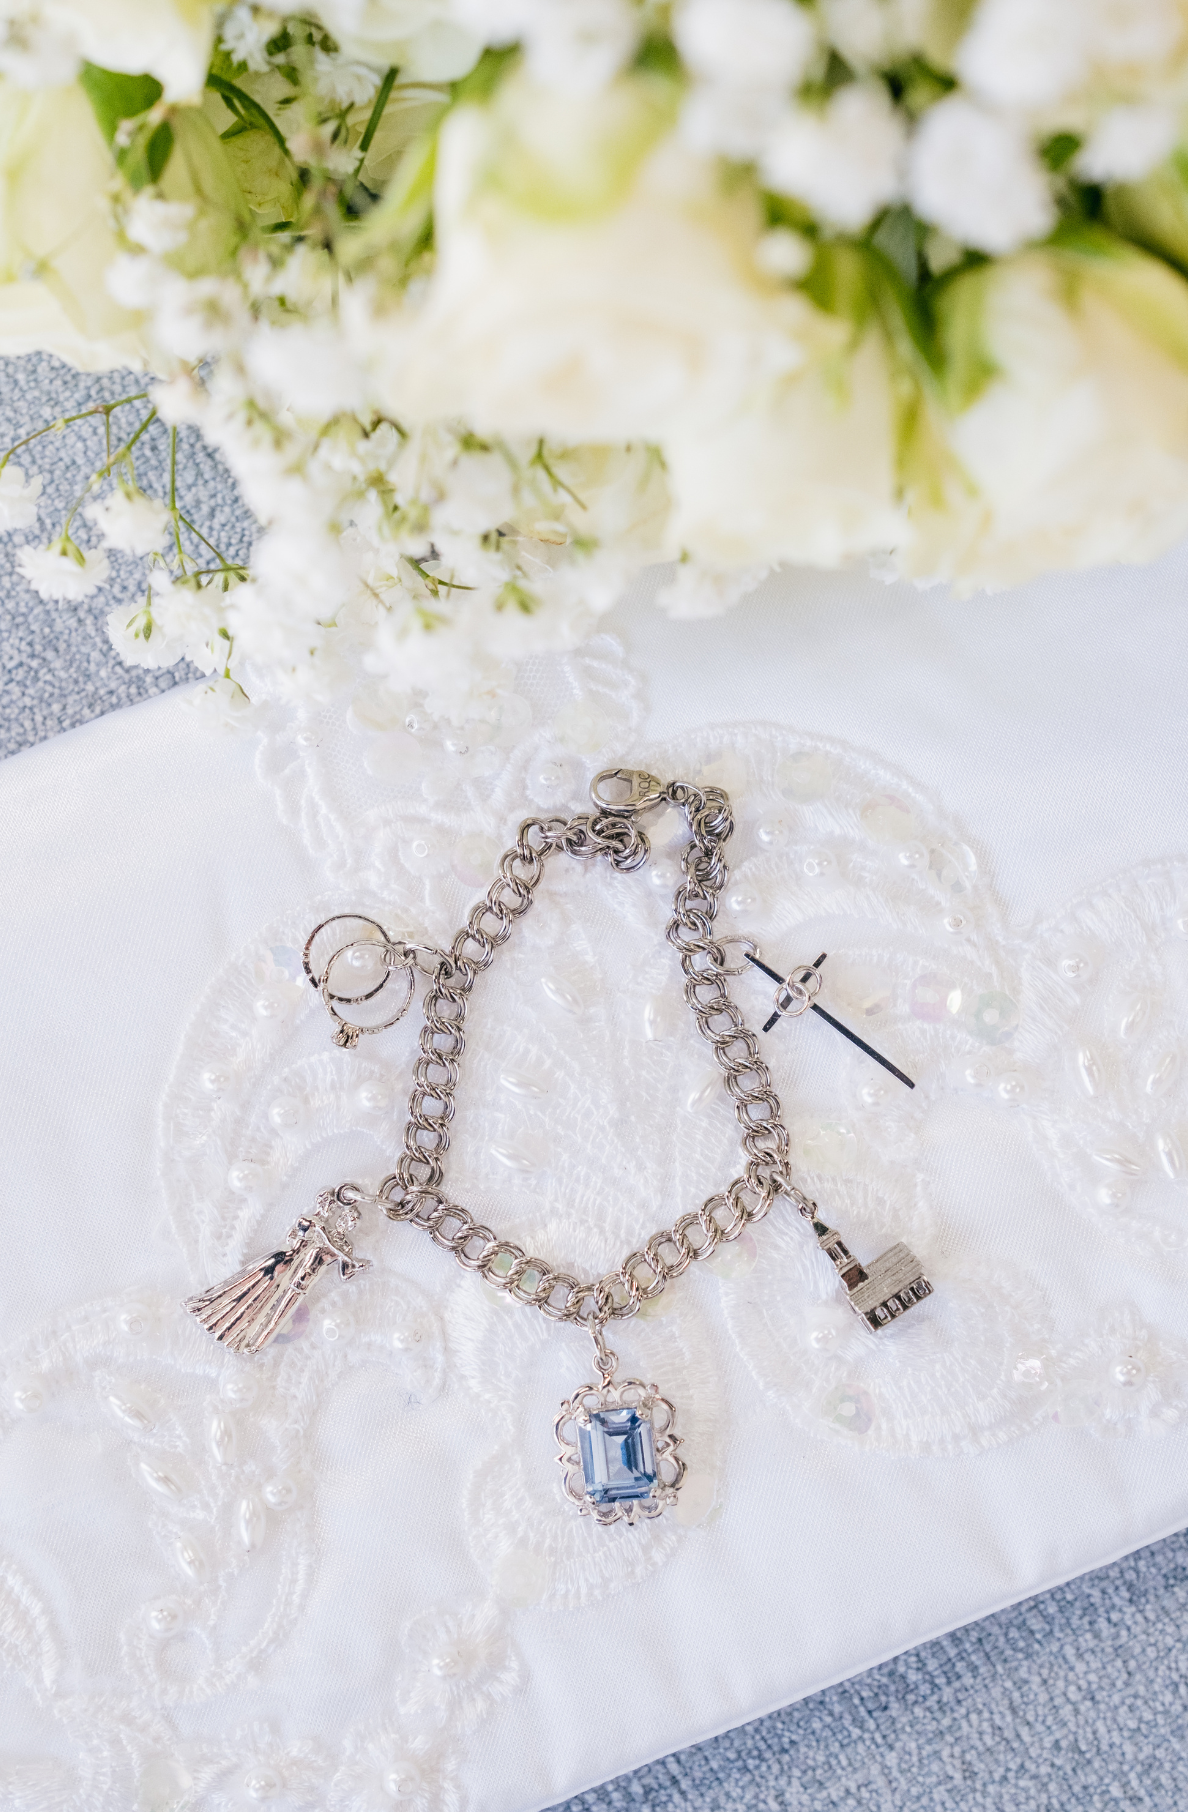 The Bride's Blessings Bracelet